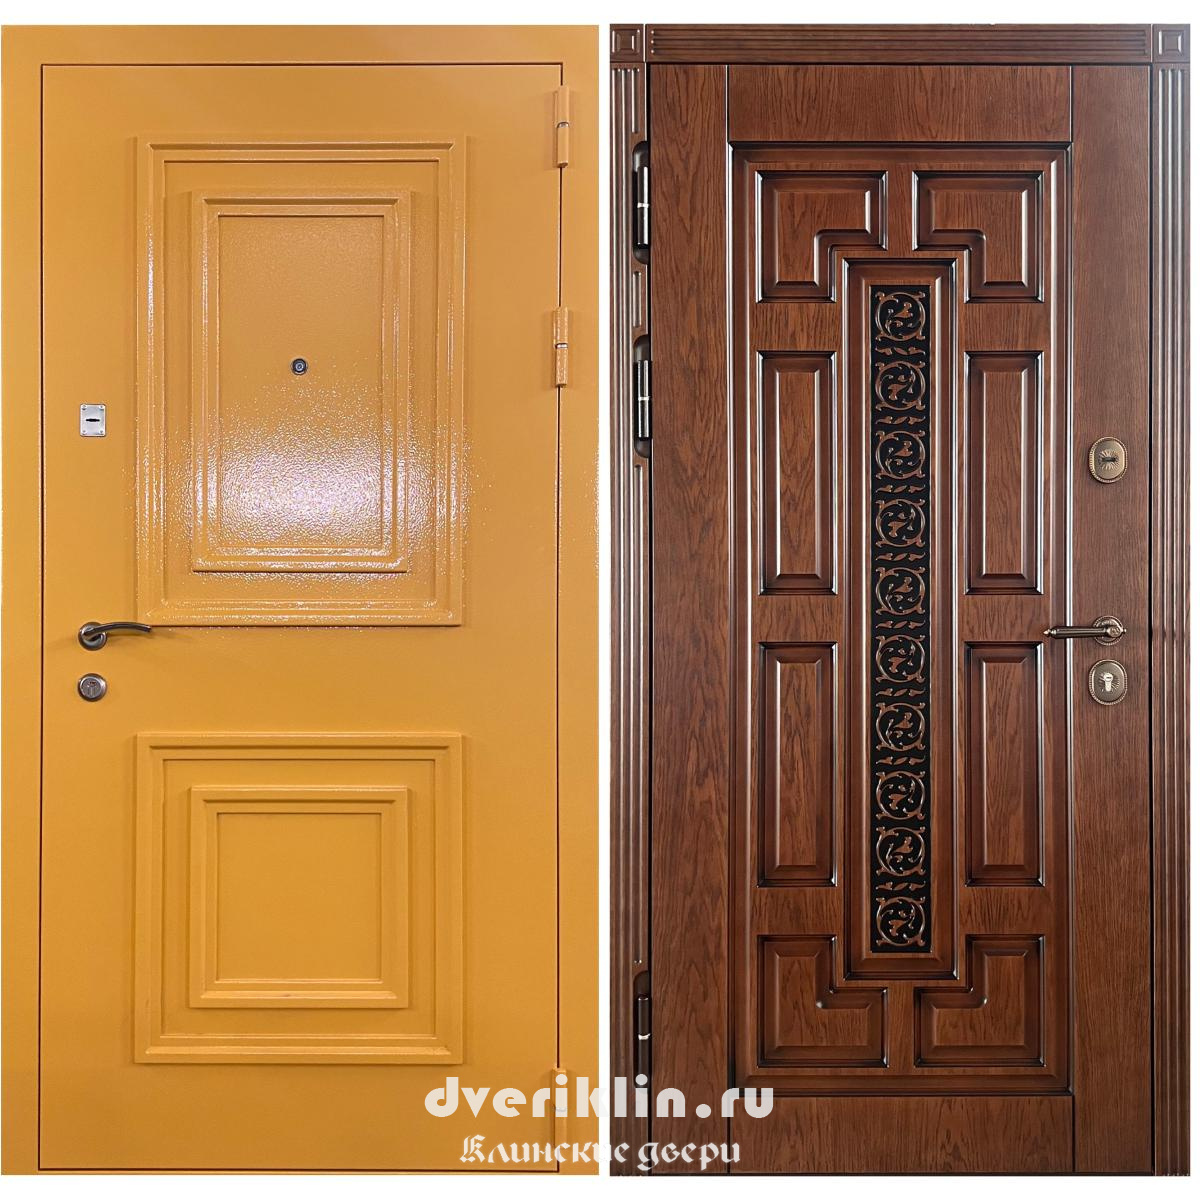 Дверь в дом MDD-04 (В частный дом)